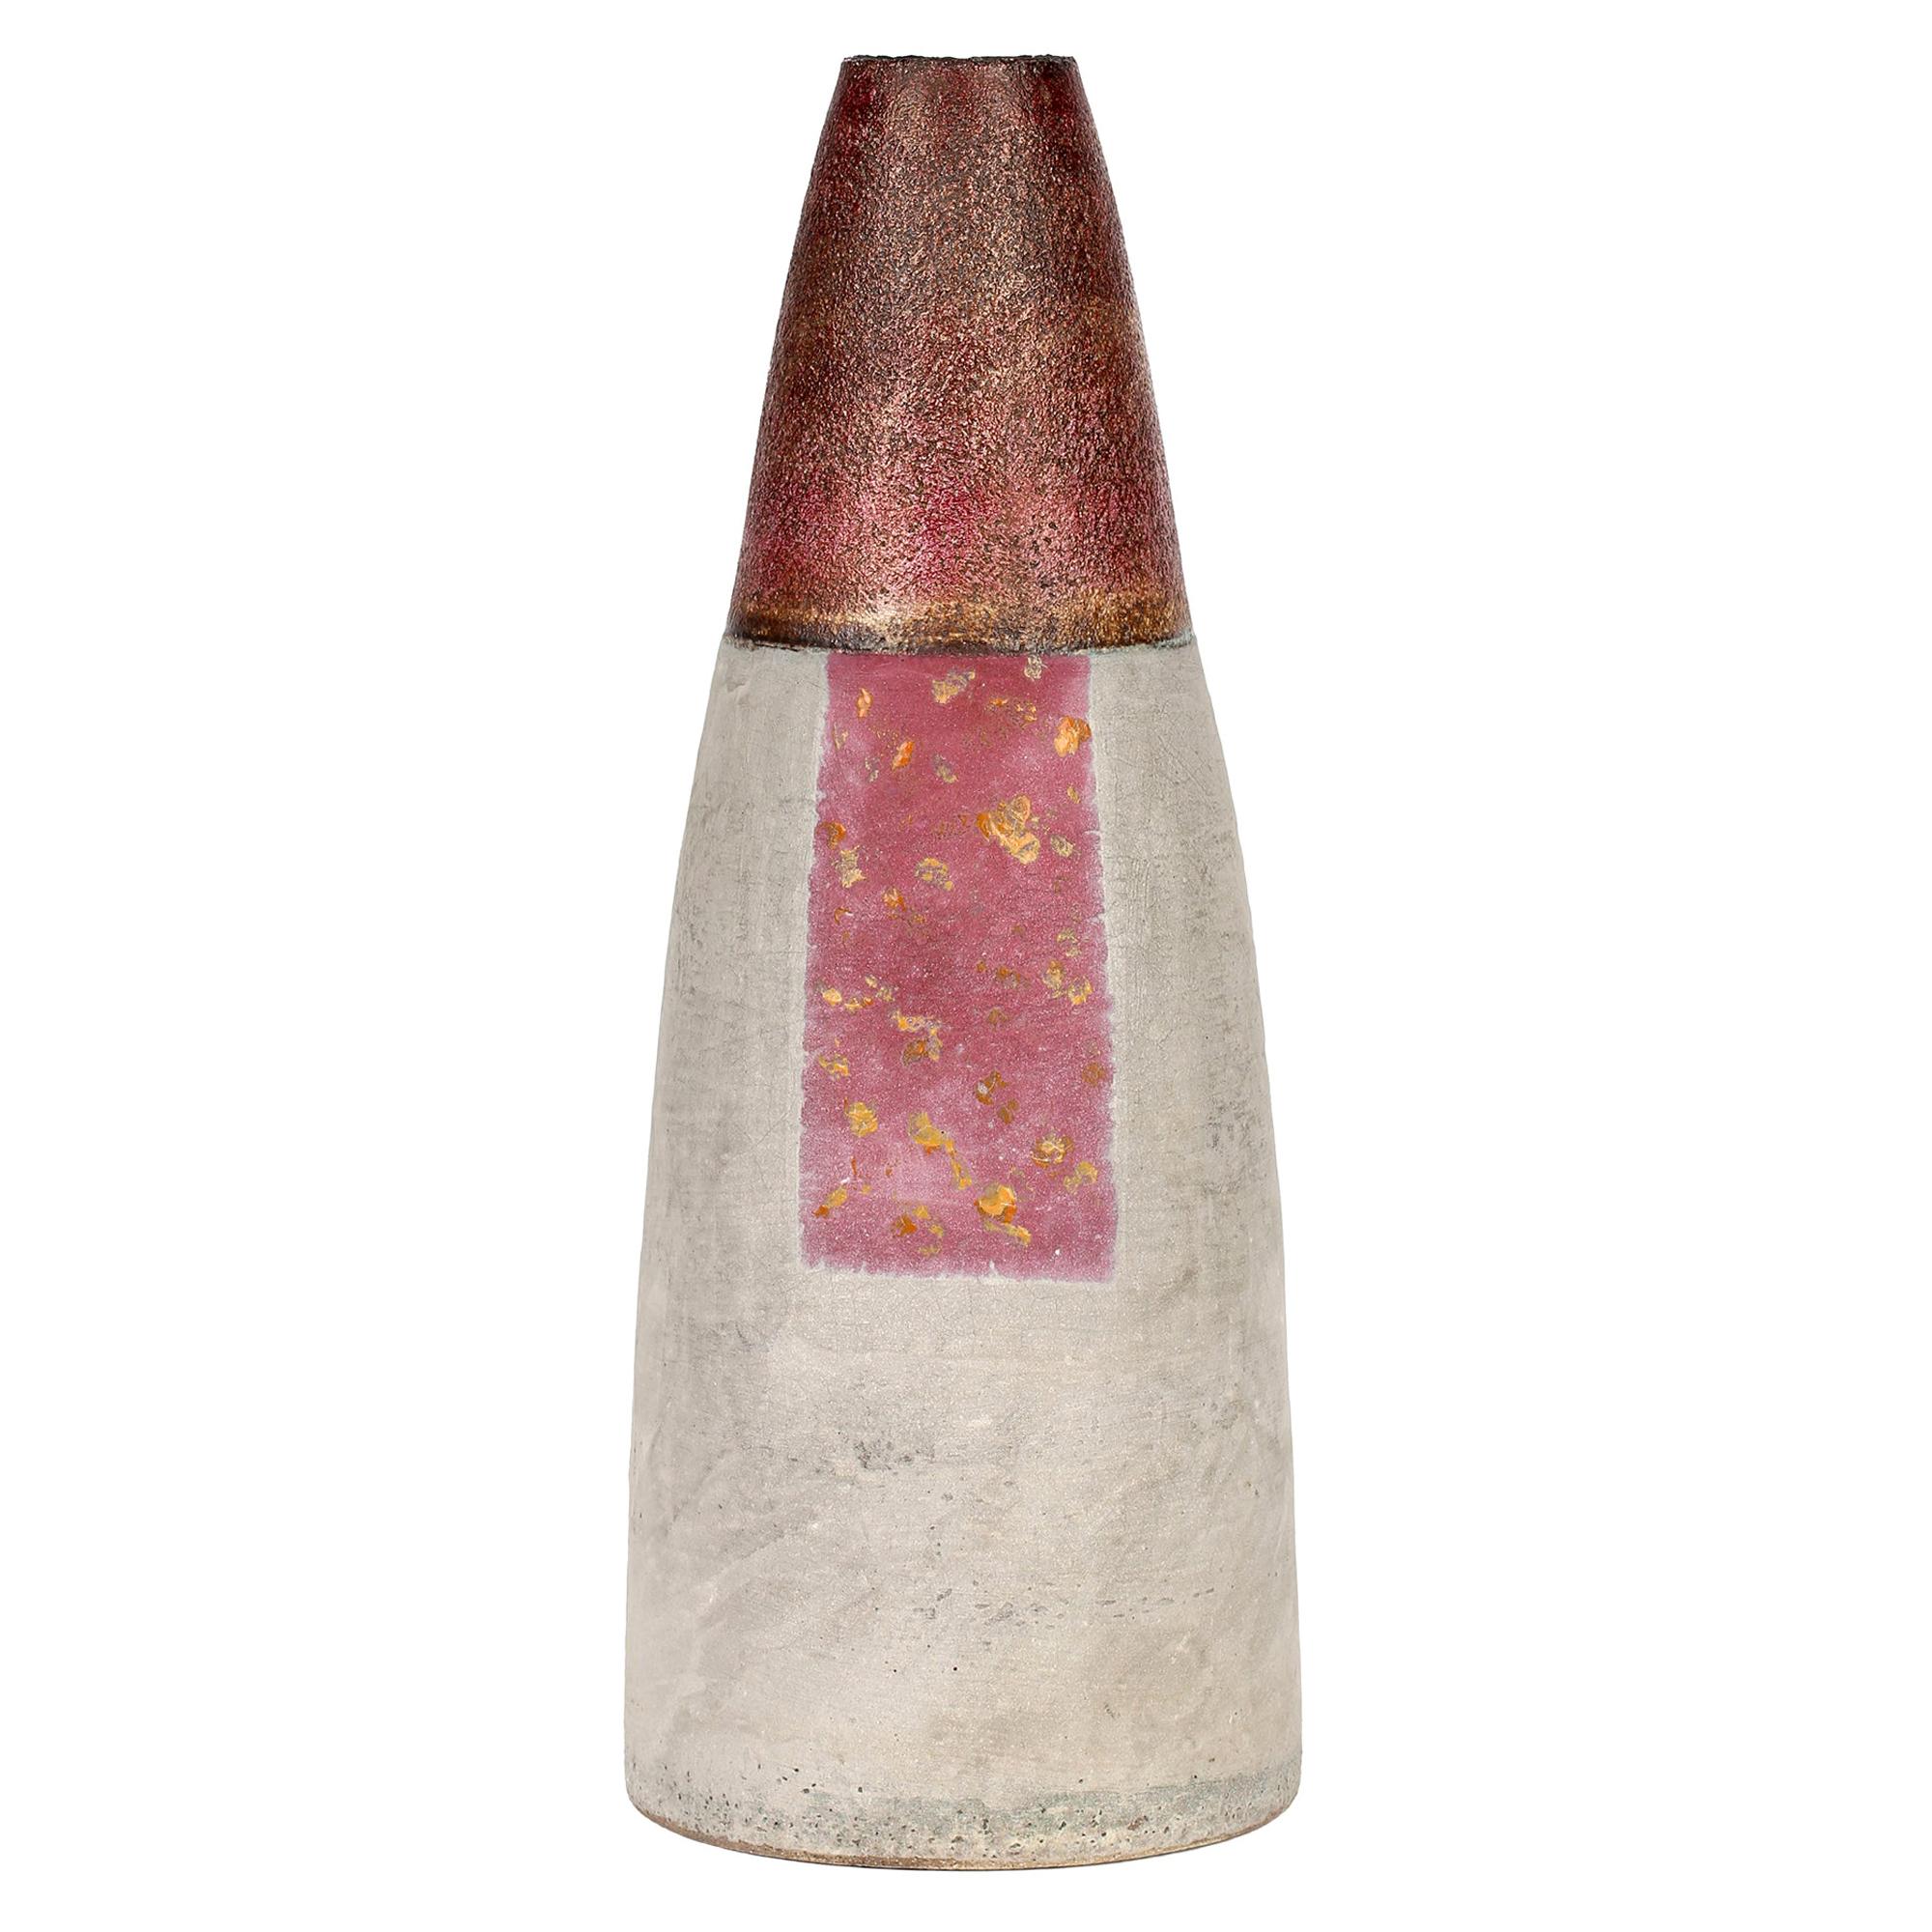 Zylindrische Vase aus glasiertem Ton von Robin Welch Studio Pottery